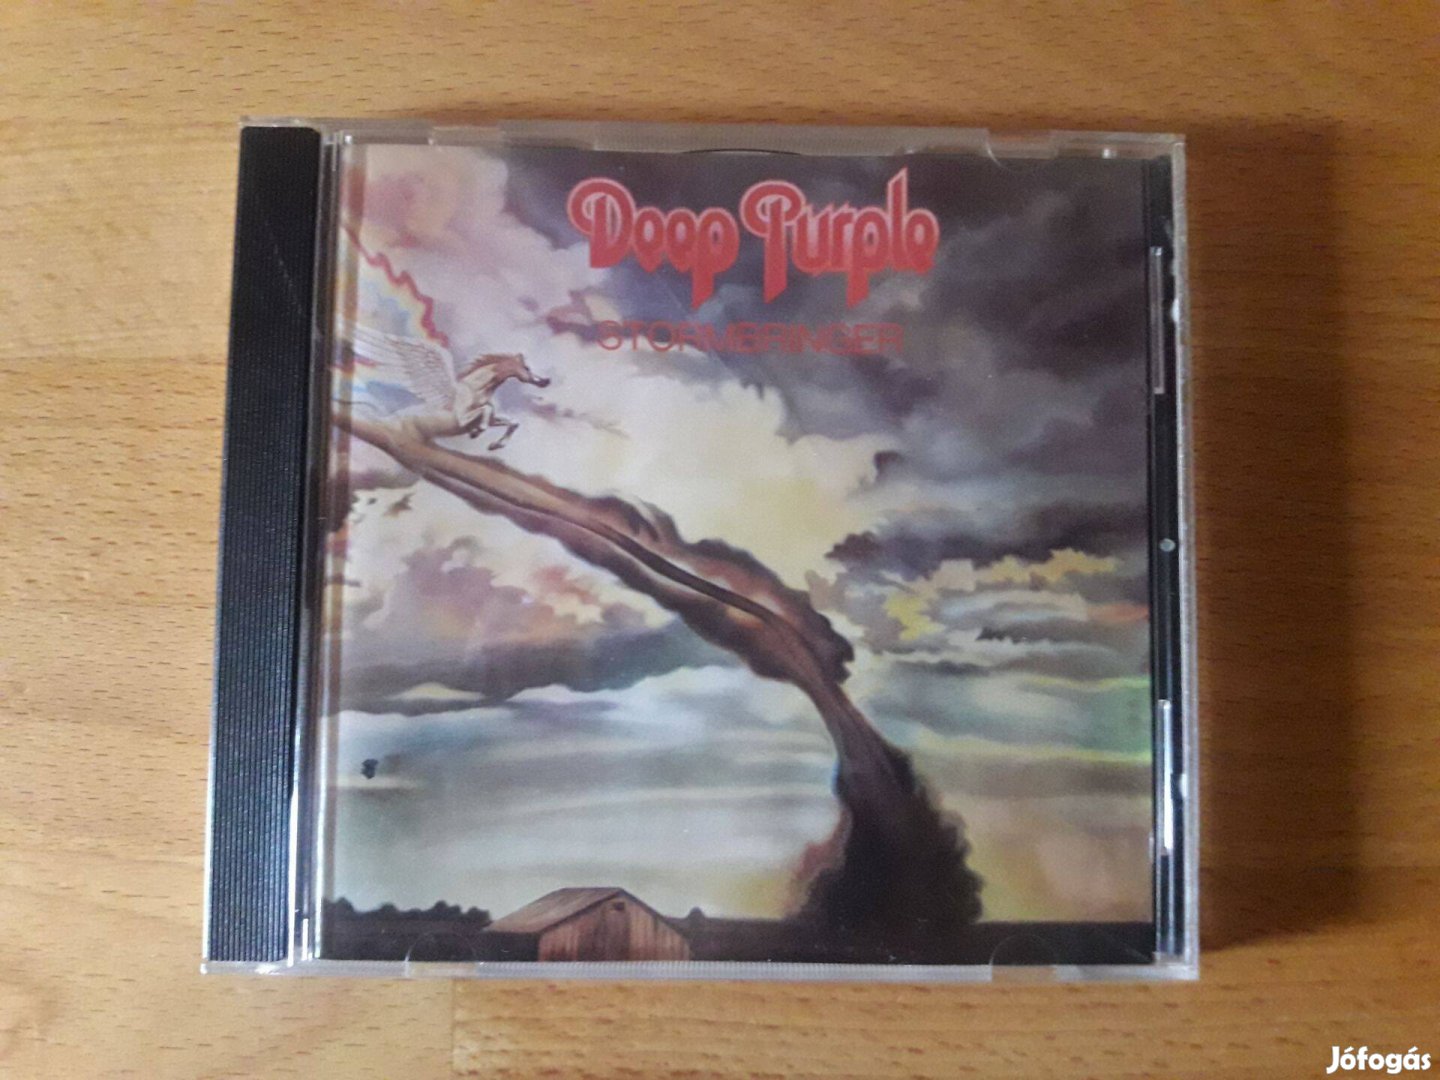 Deep Purple: Stormbringer CD szép állapotban eladó